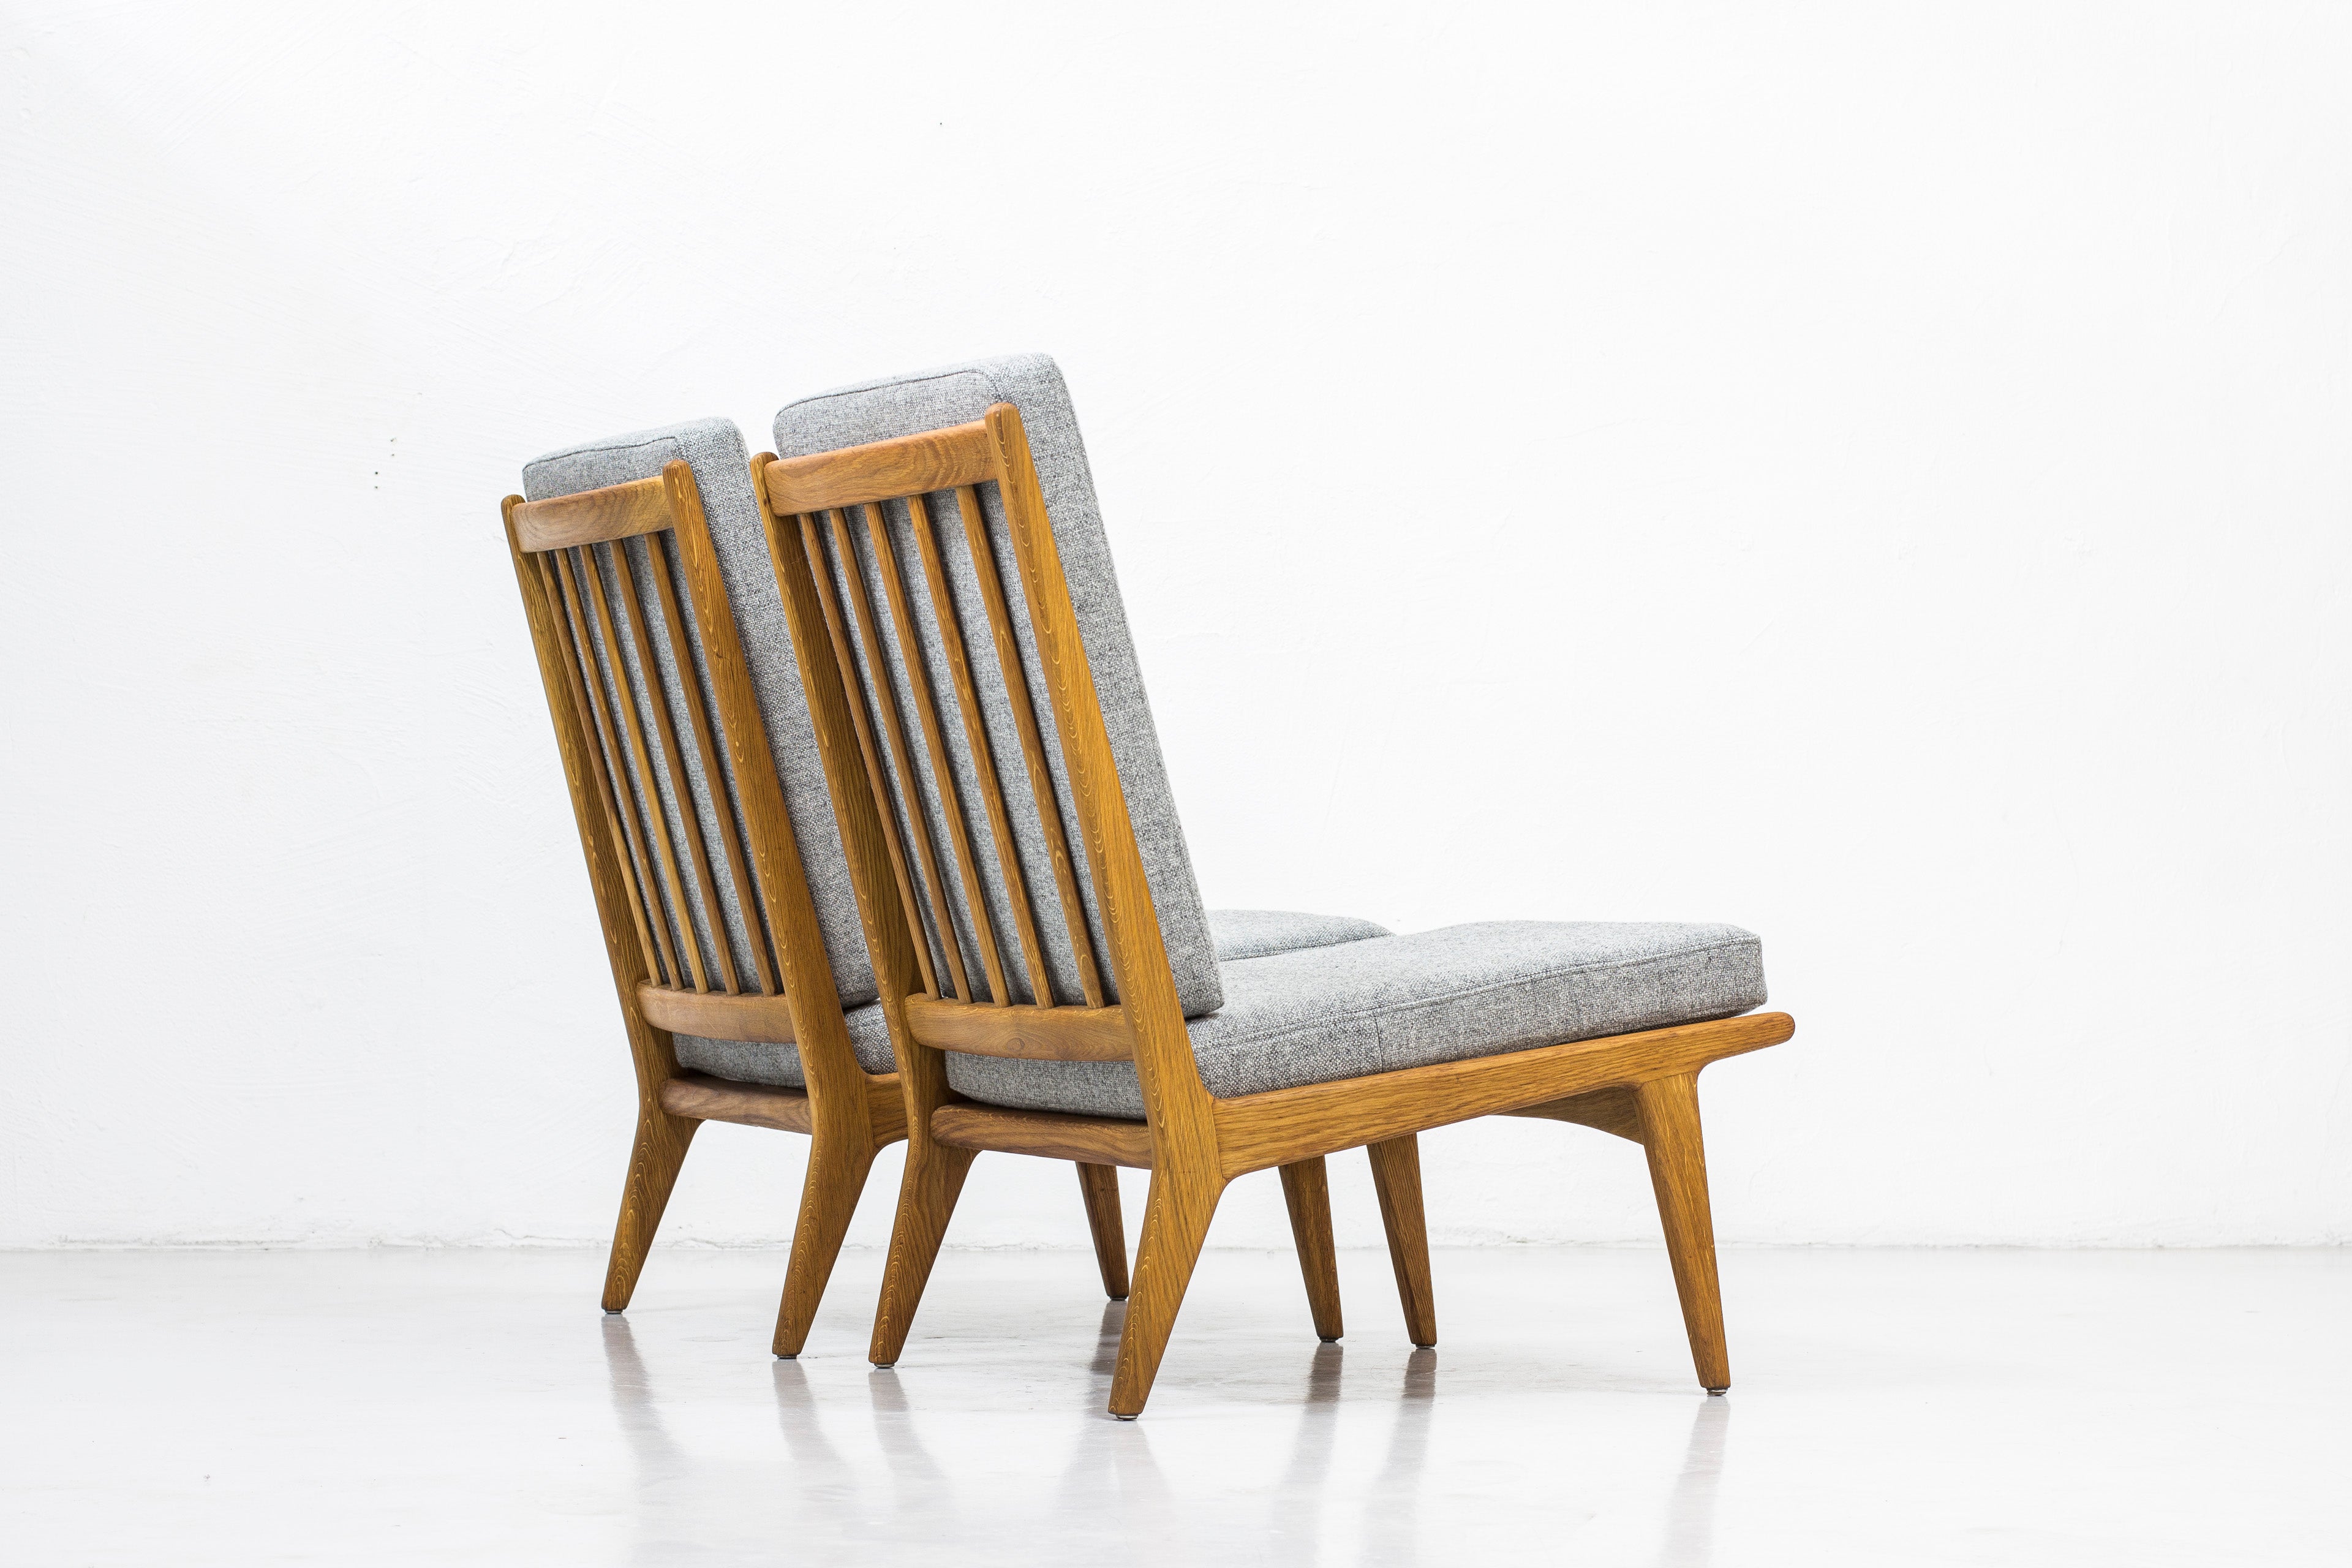 Easy chairs by Karl Erik Ekselius